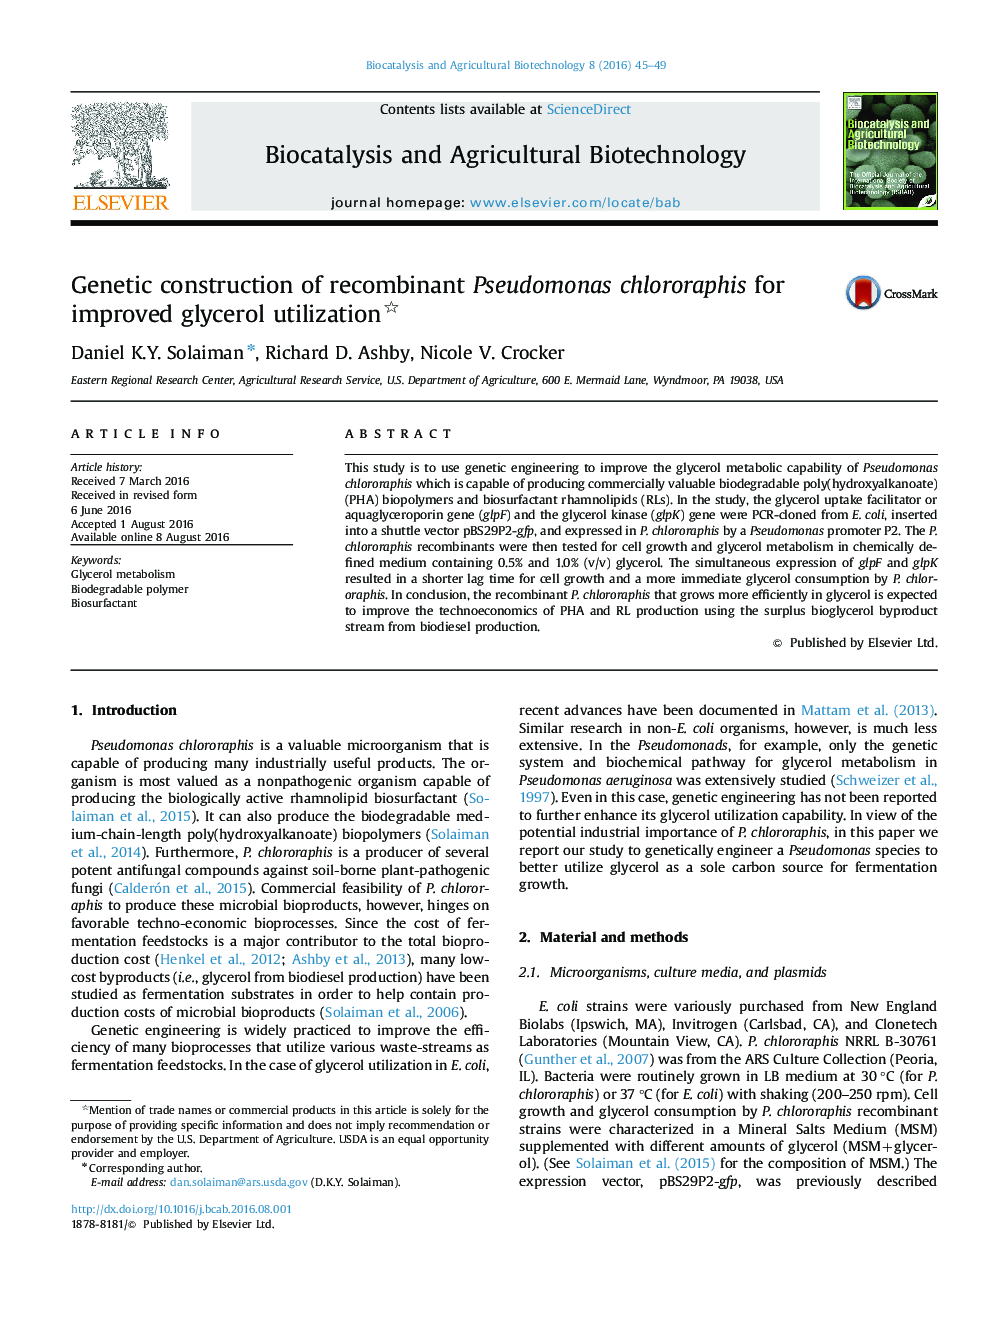 ساخت ژنتیکی chlororaphis سودوموناس نوترکیب برای استفاده بهینه از گلیسرول